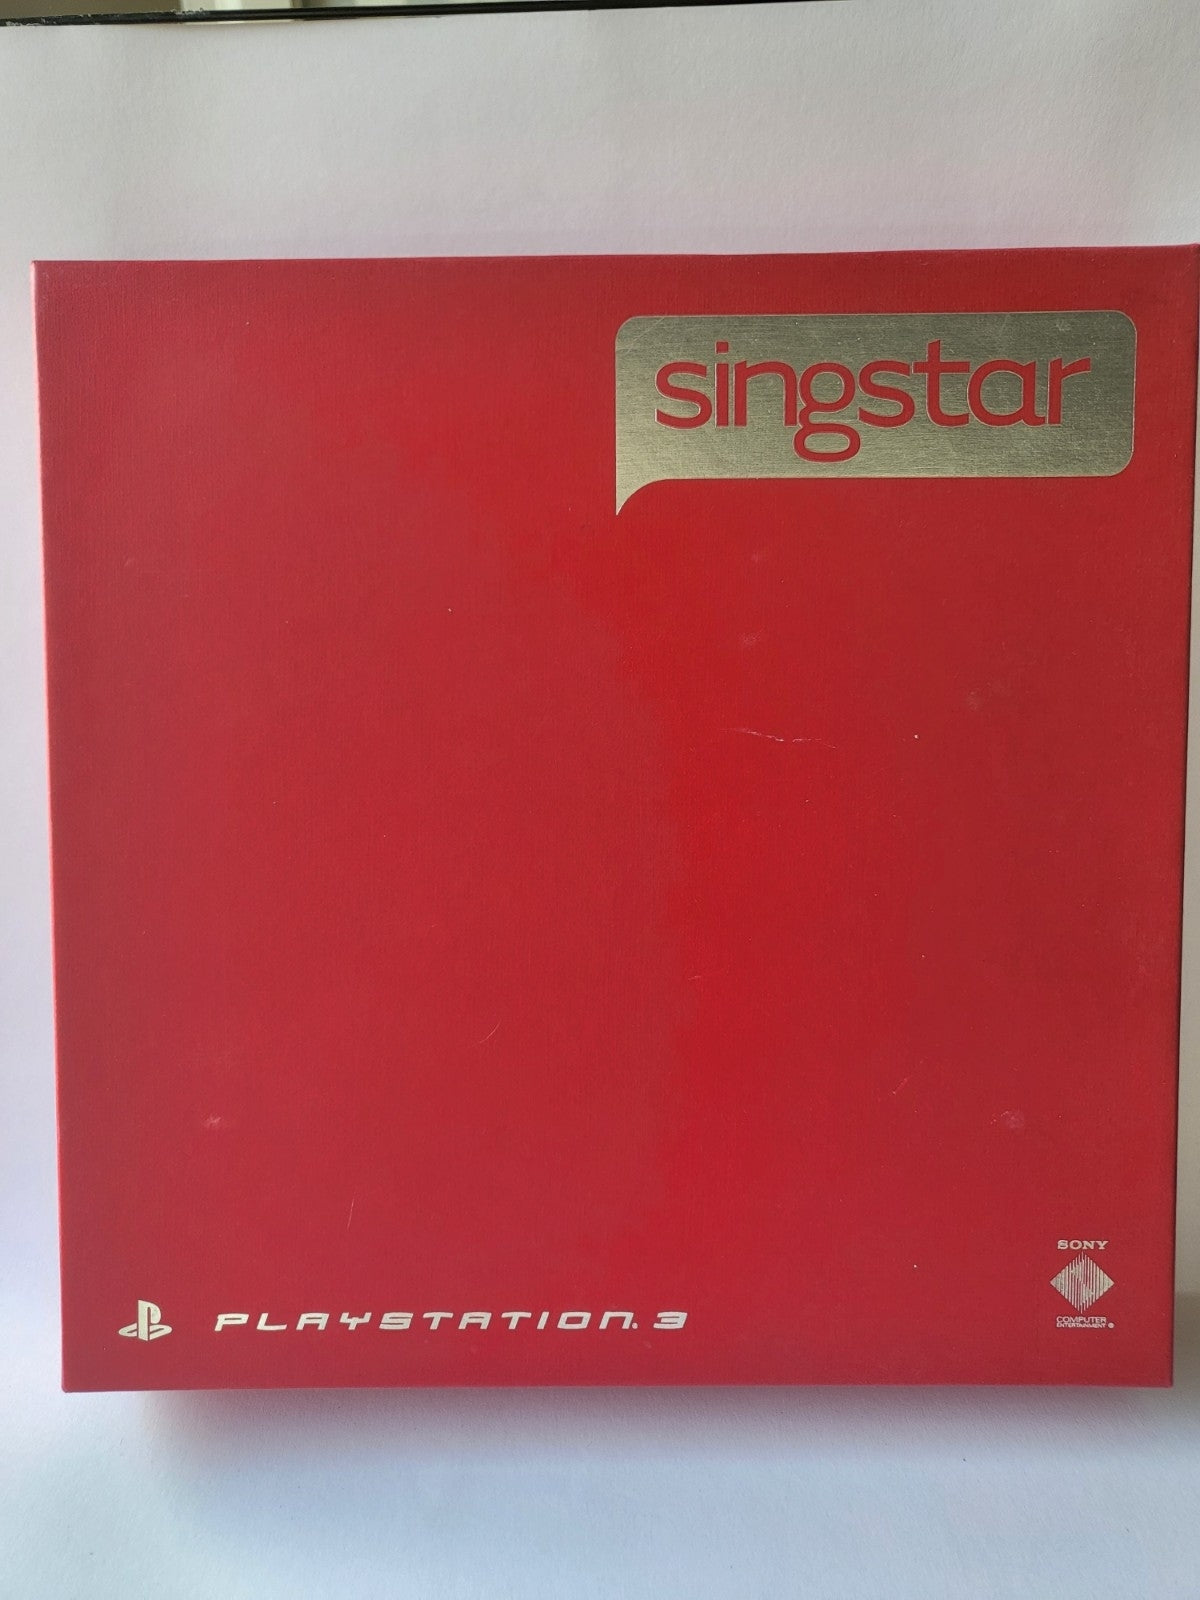 Draadloze Singstar Set met 3 spellen (singstar, singstar Vol 2 en Singstar Vol 3) in orginele doos Playstation 3